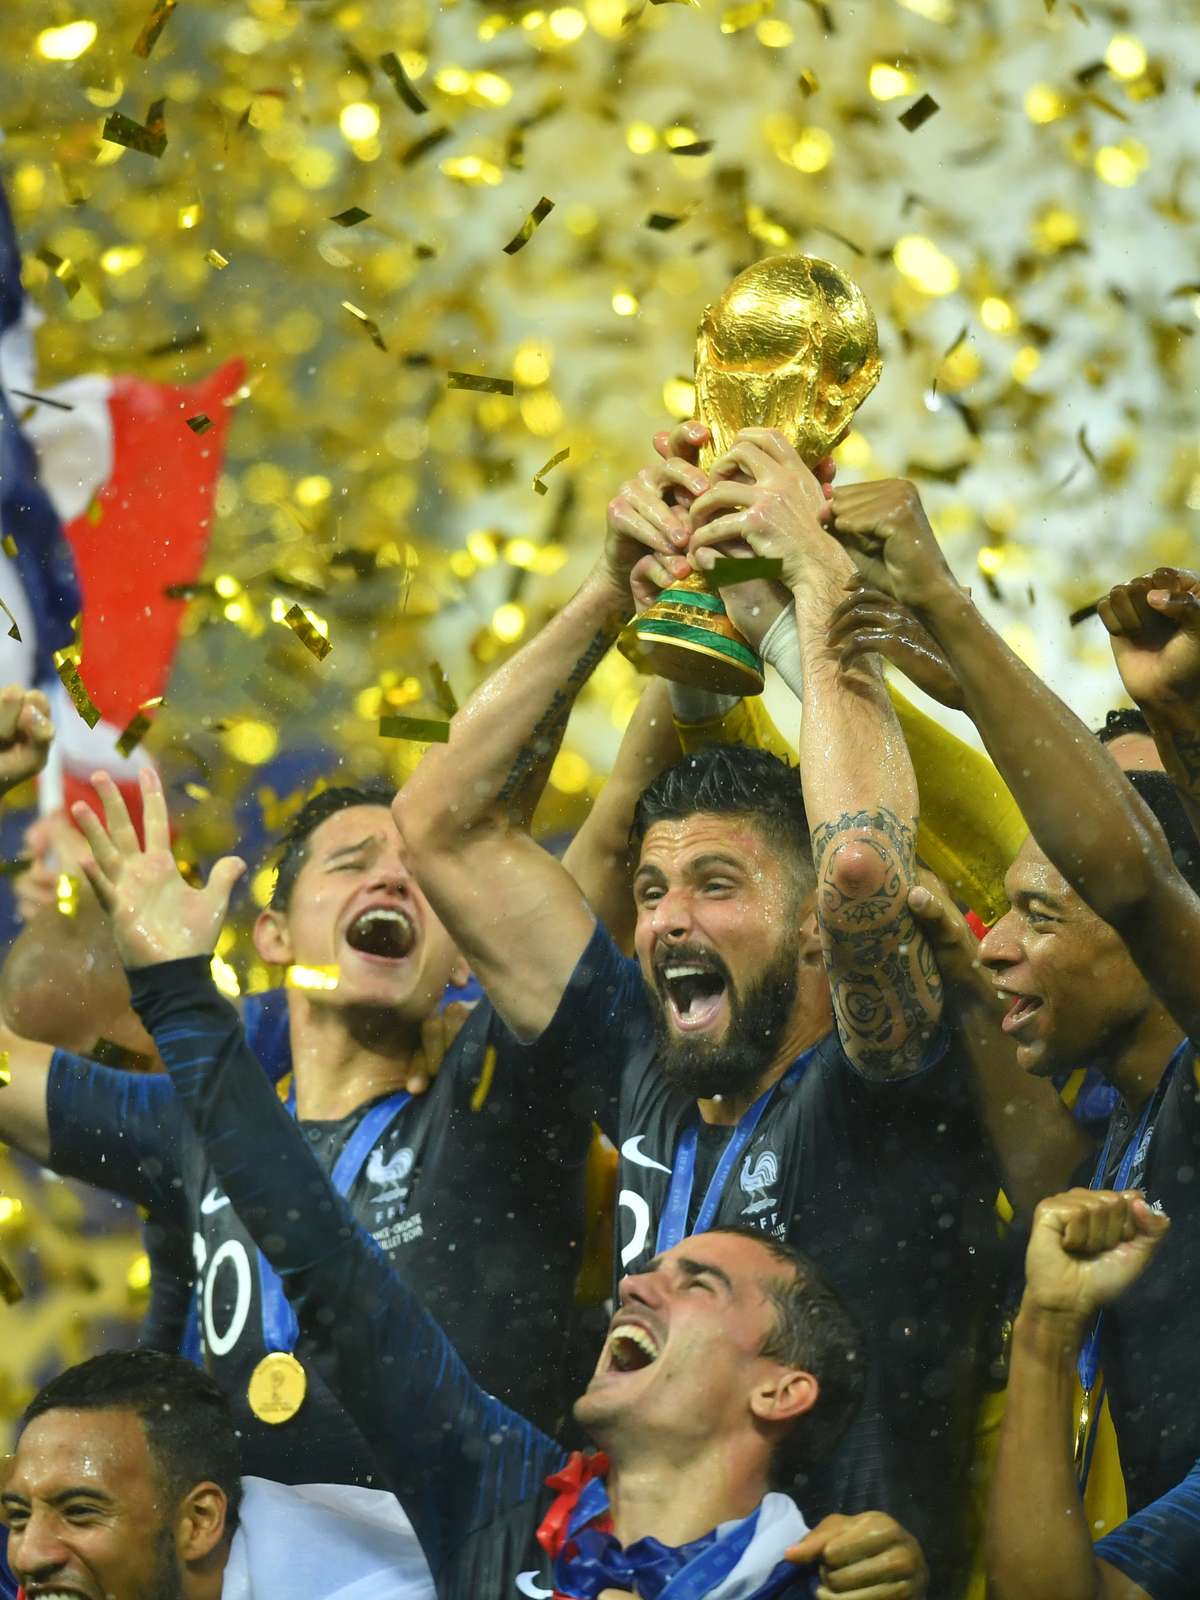 França vence Croácia por 4 x 2 e é bicampeã mundial de futebol